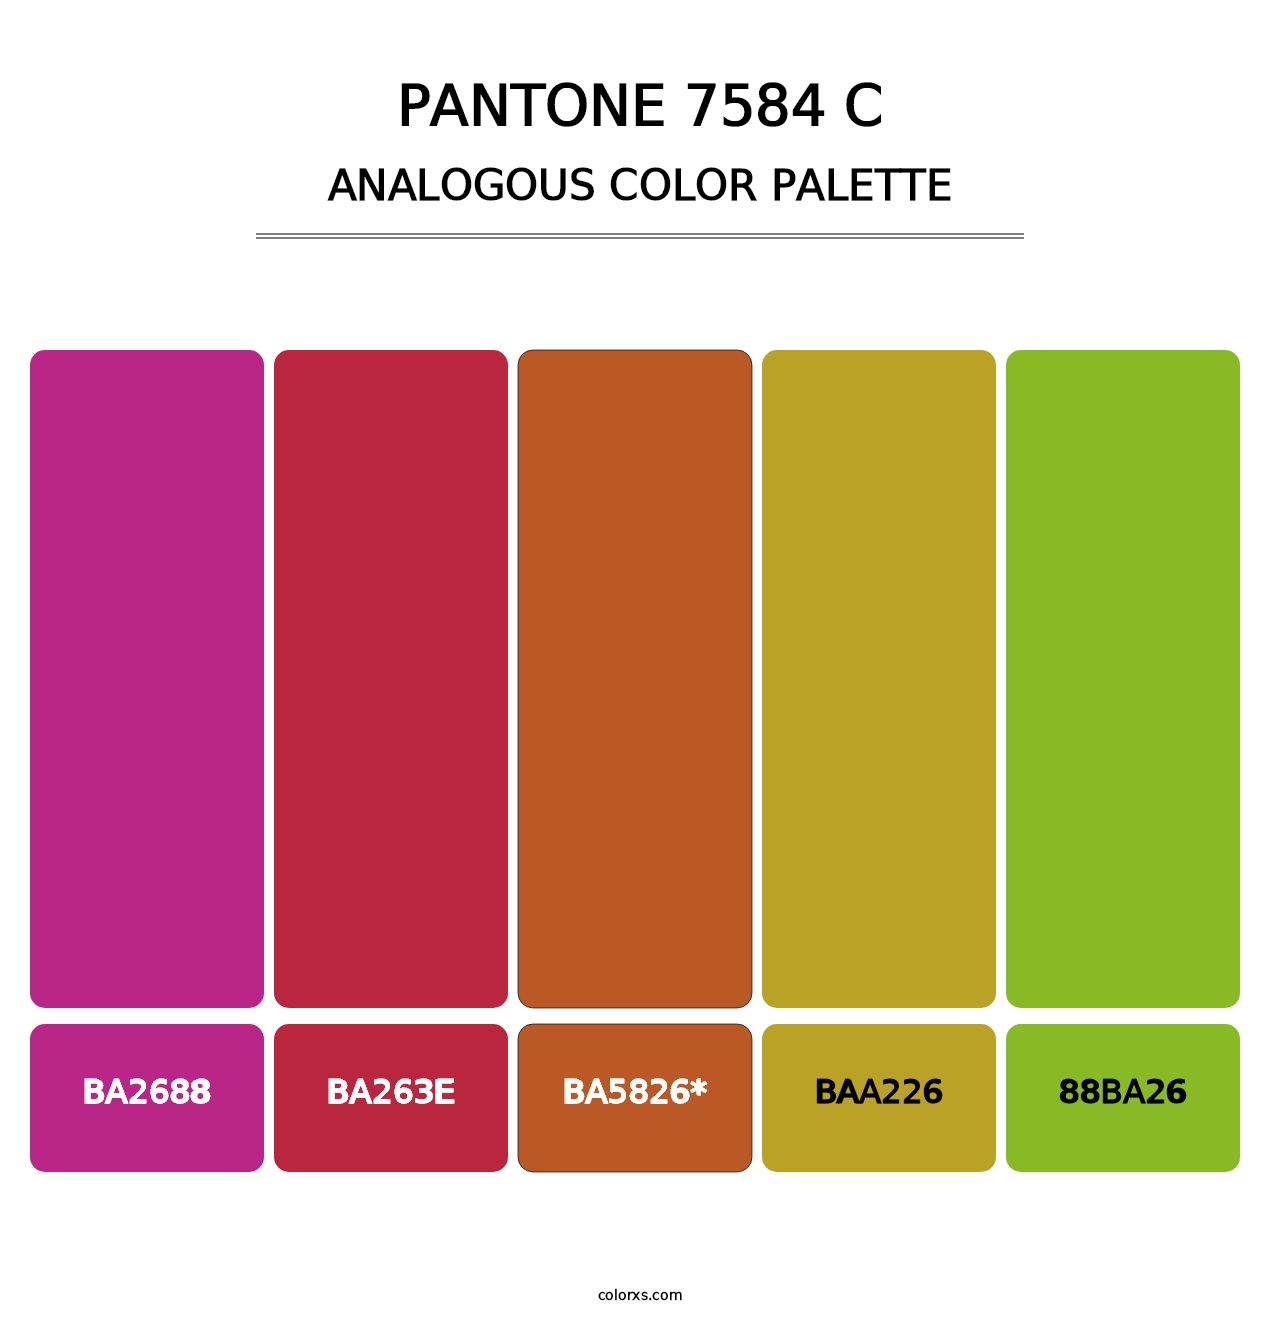 PANTONE 7584 C - Analogous Color Palette